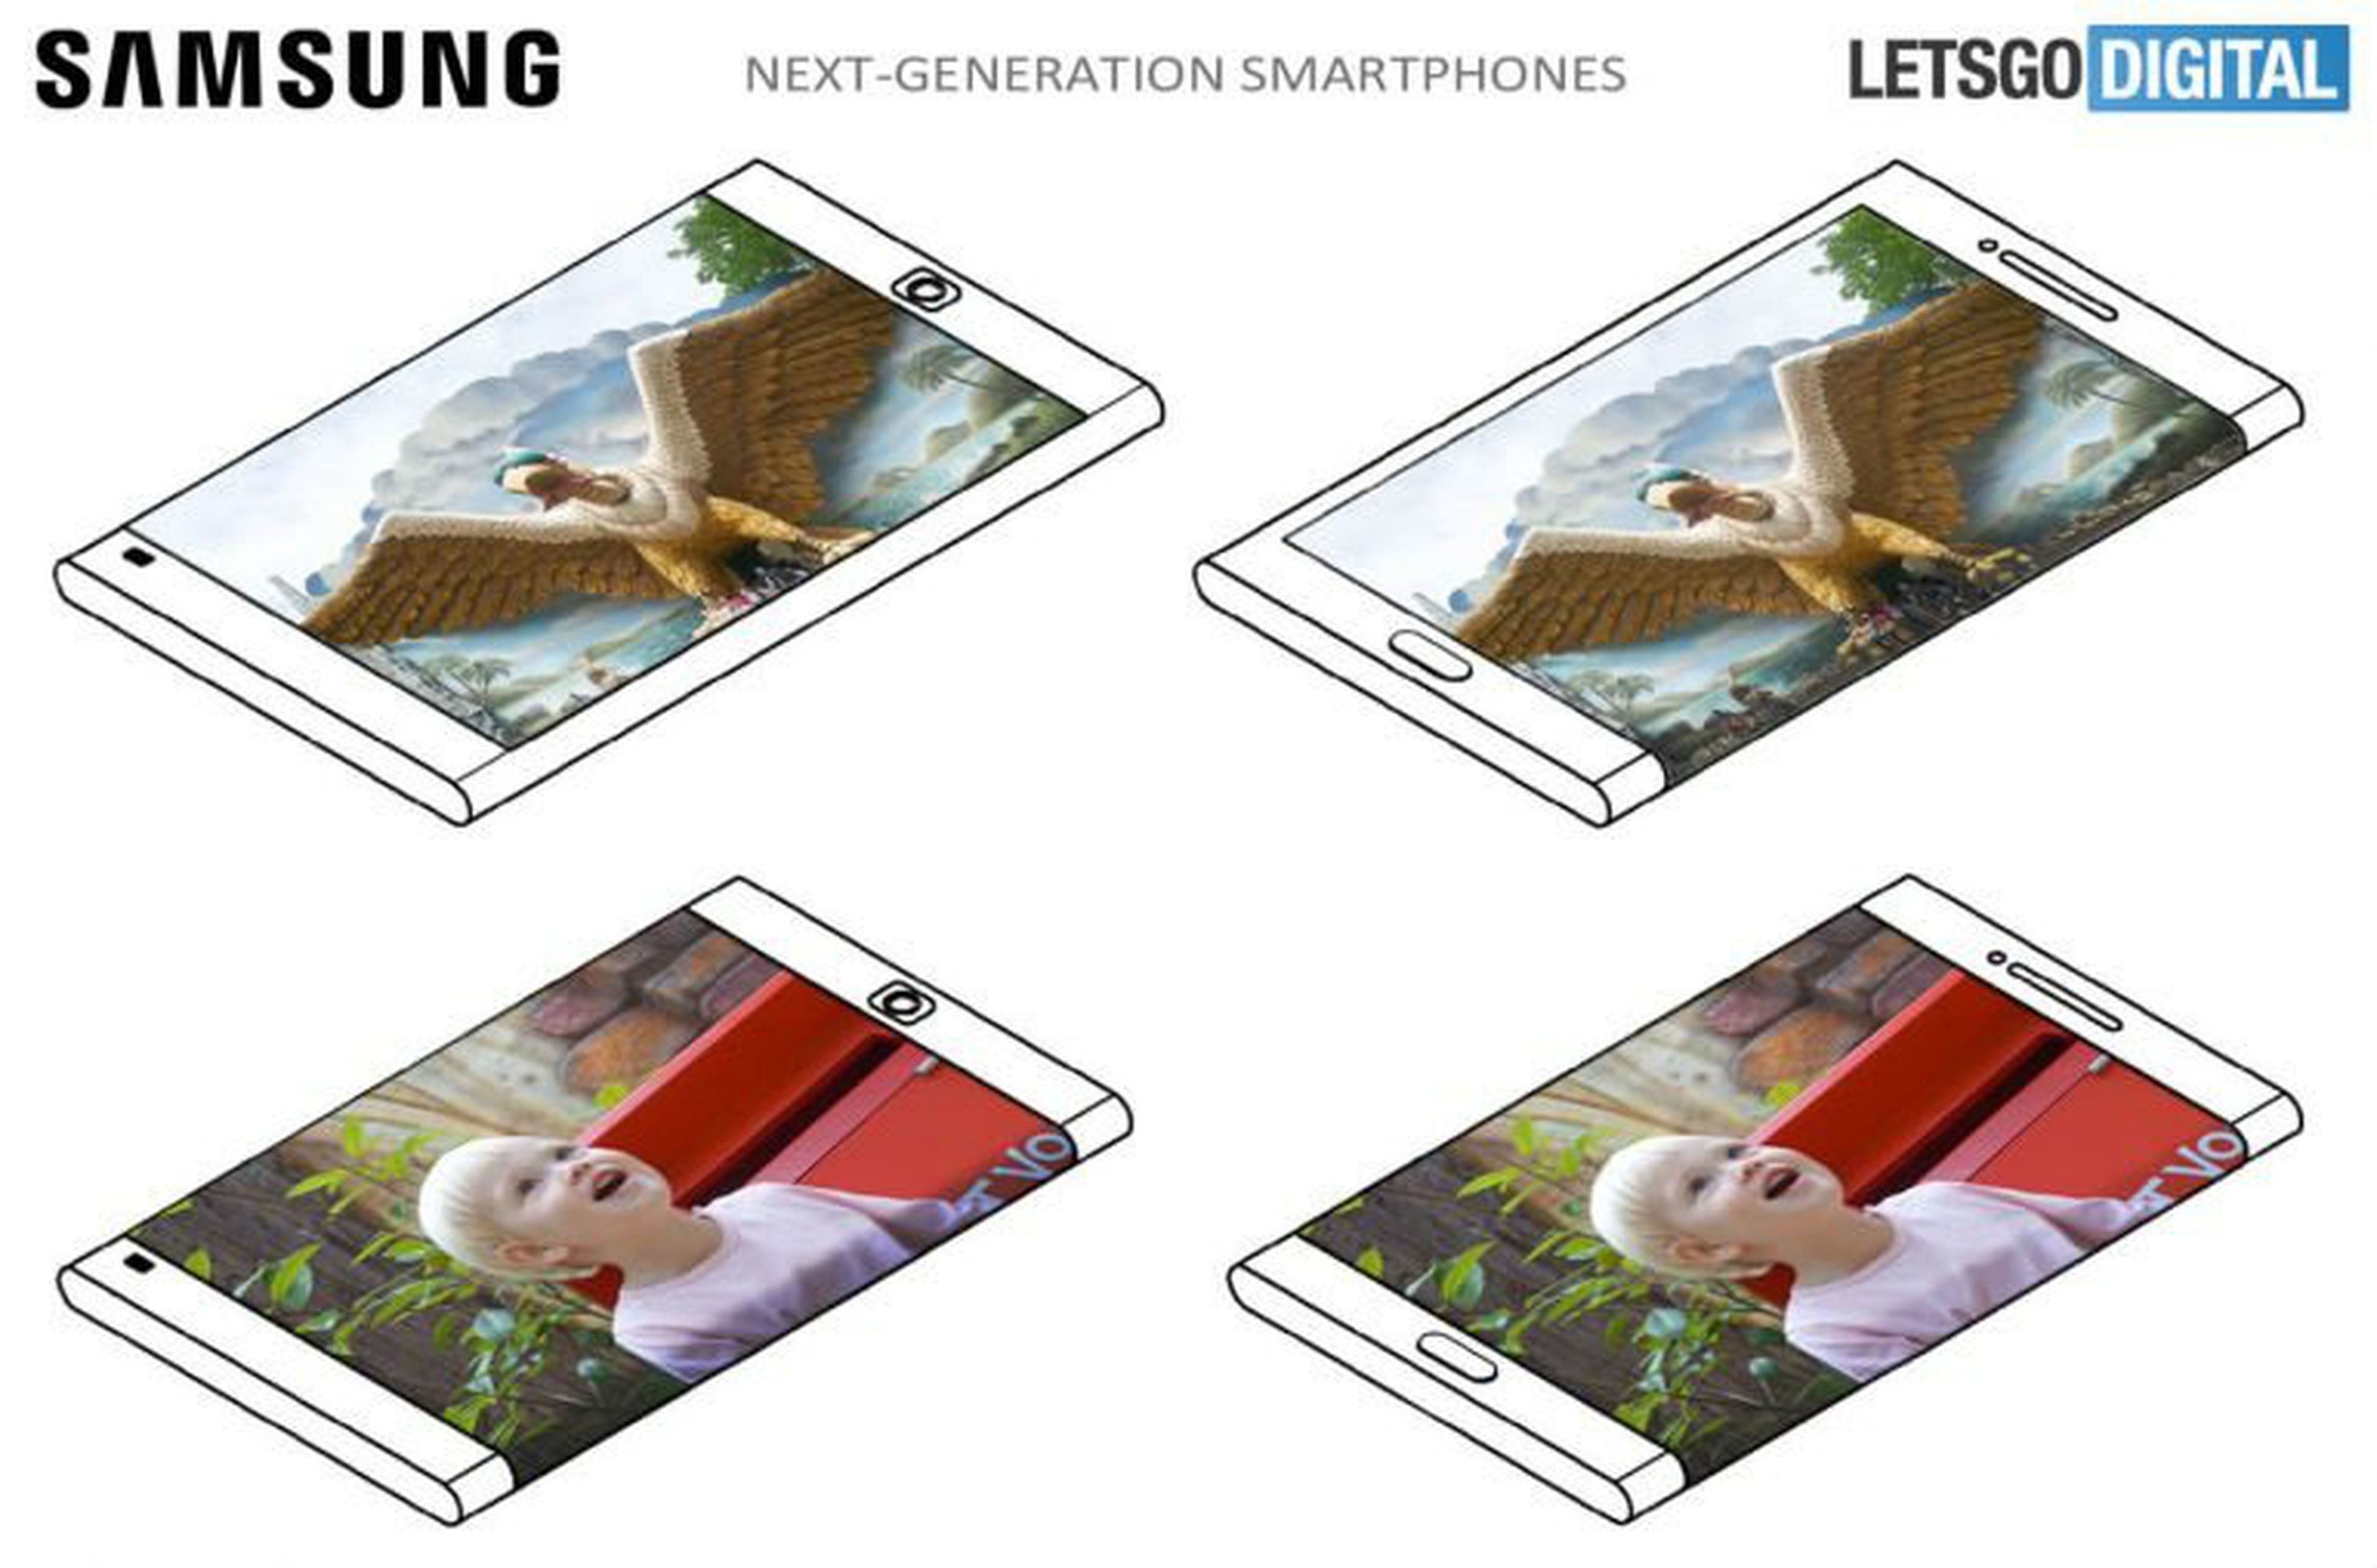 La patente de Samsung publicada el pasado 4 de enero muestra un 'smartphone' con una pantalla que rodea todo el lado derecho del dispositivo.